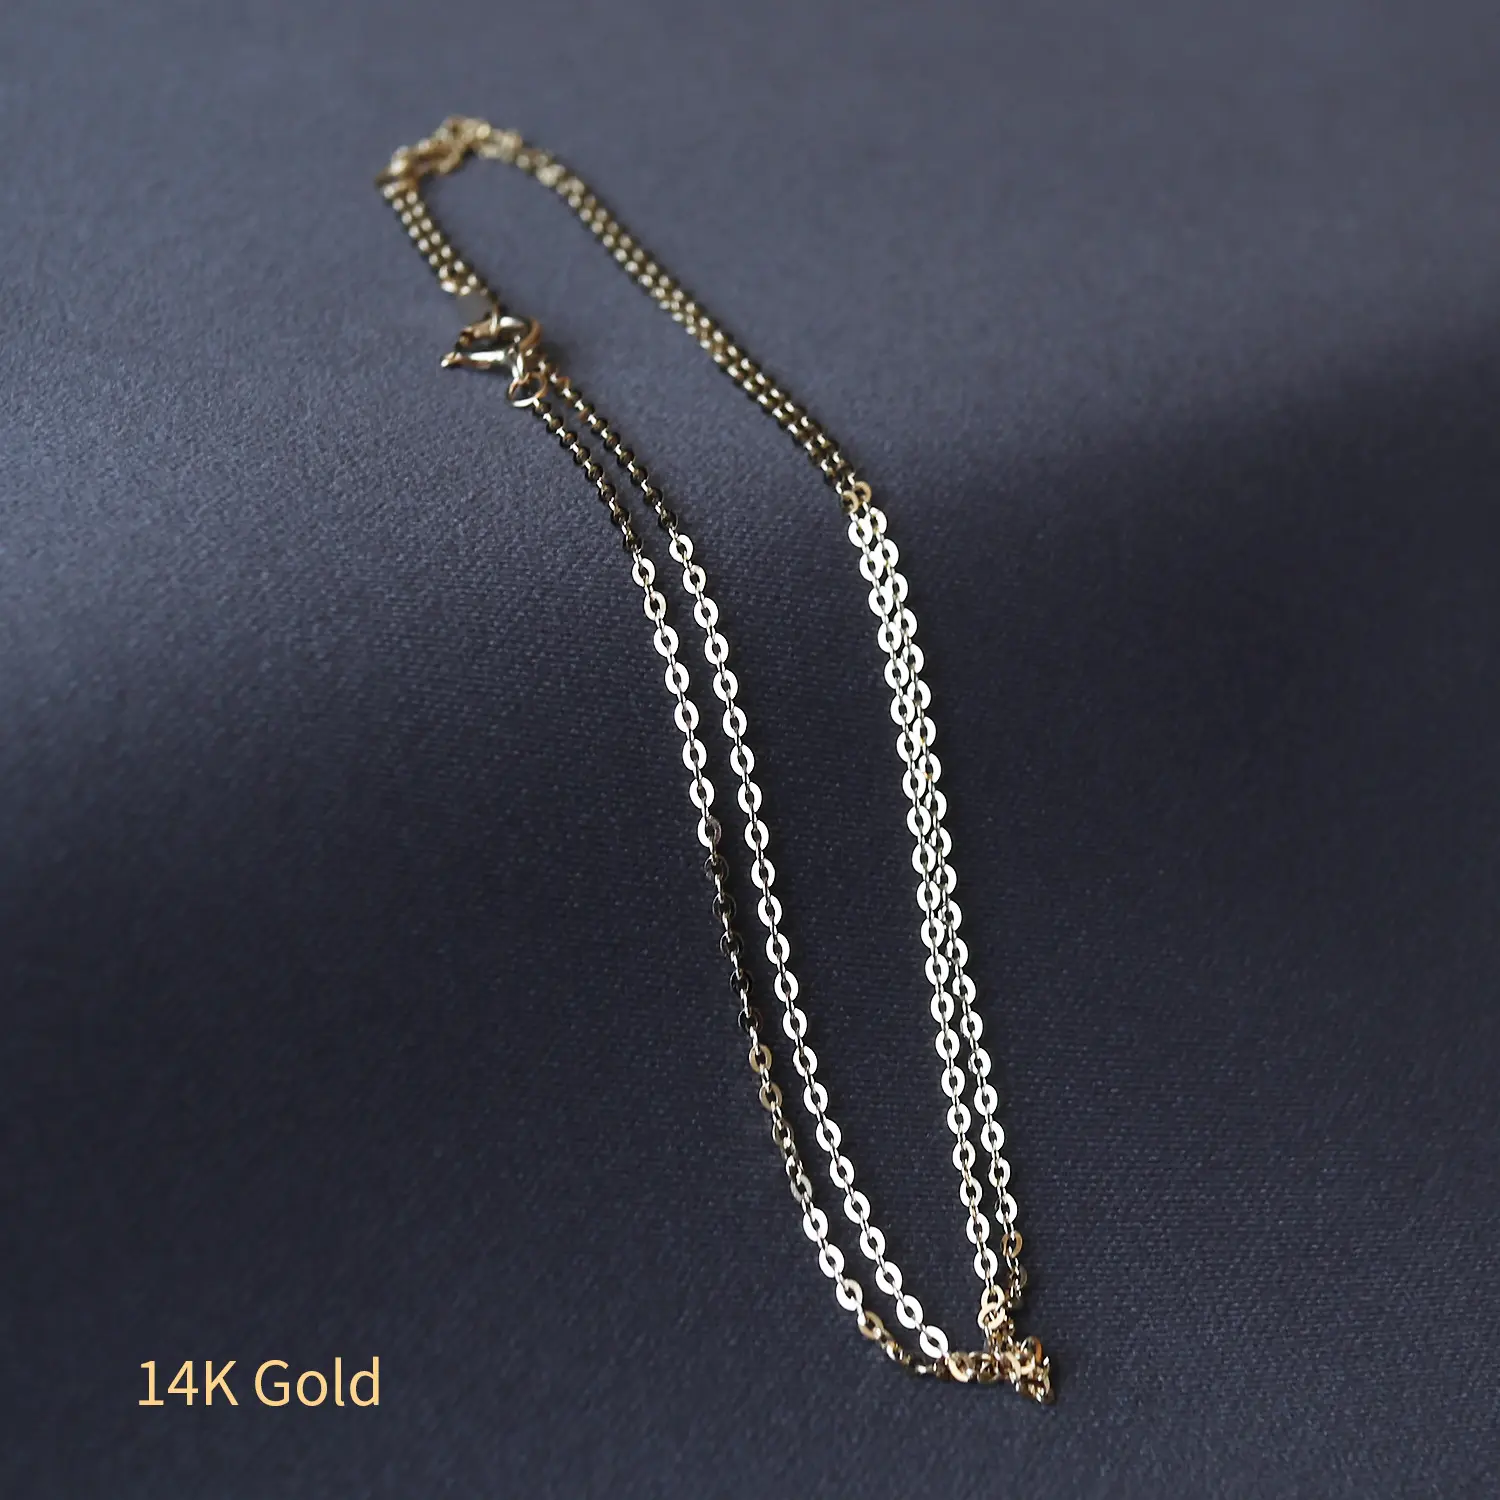 Klasik 14k katı altın kablo kolye takı toptan gerçek altın bağlantı zincirleri kadın kızlar için